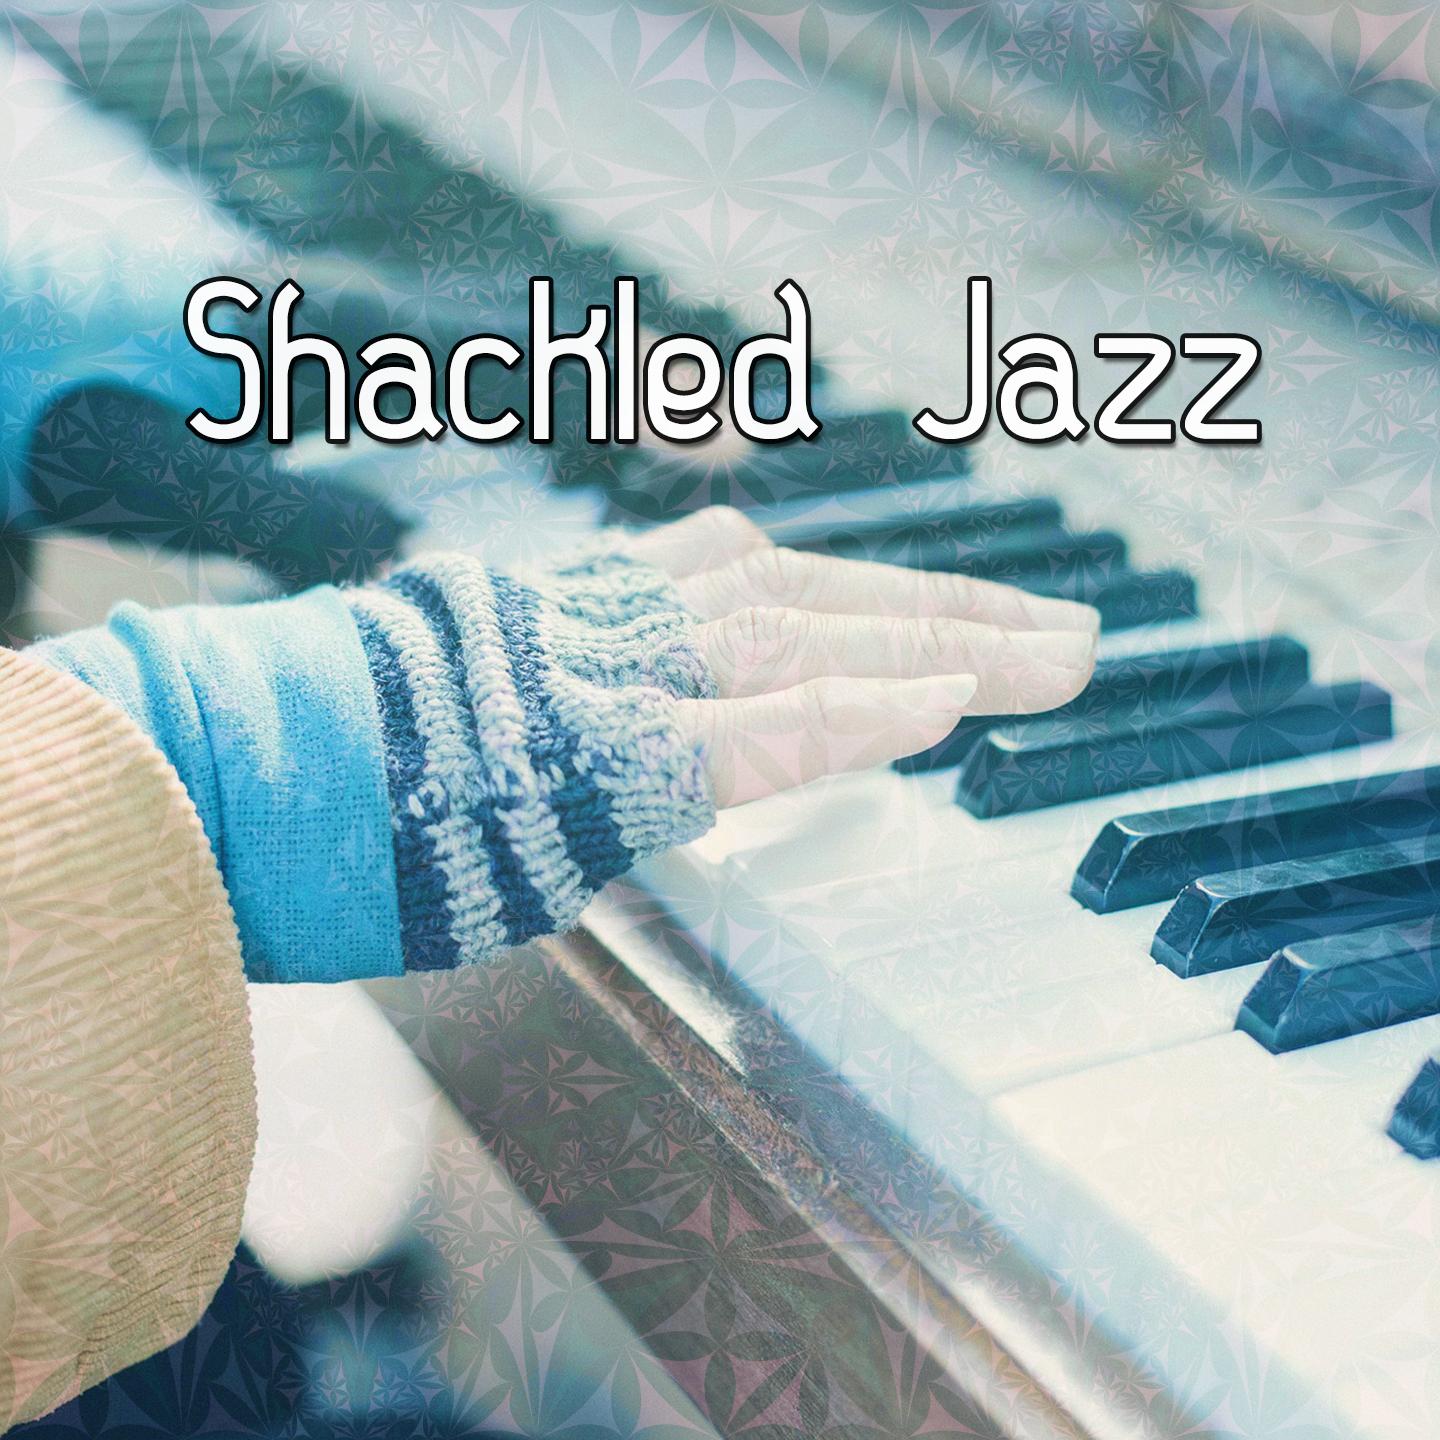 Shackled Jazz